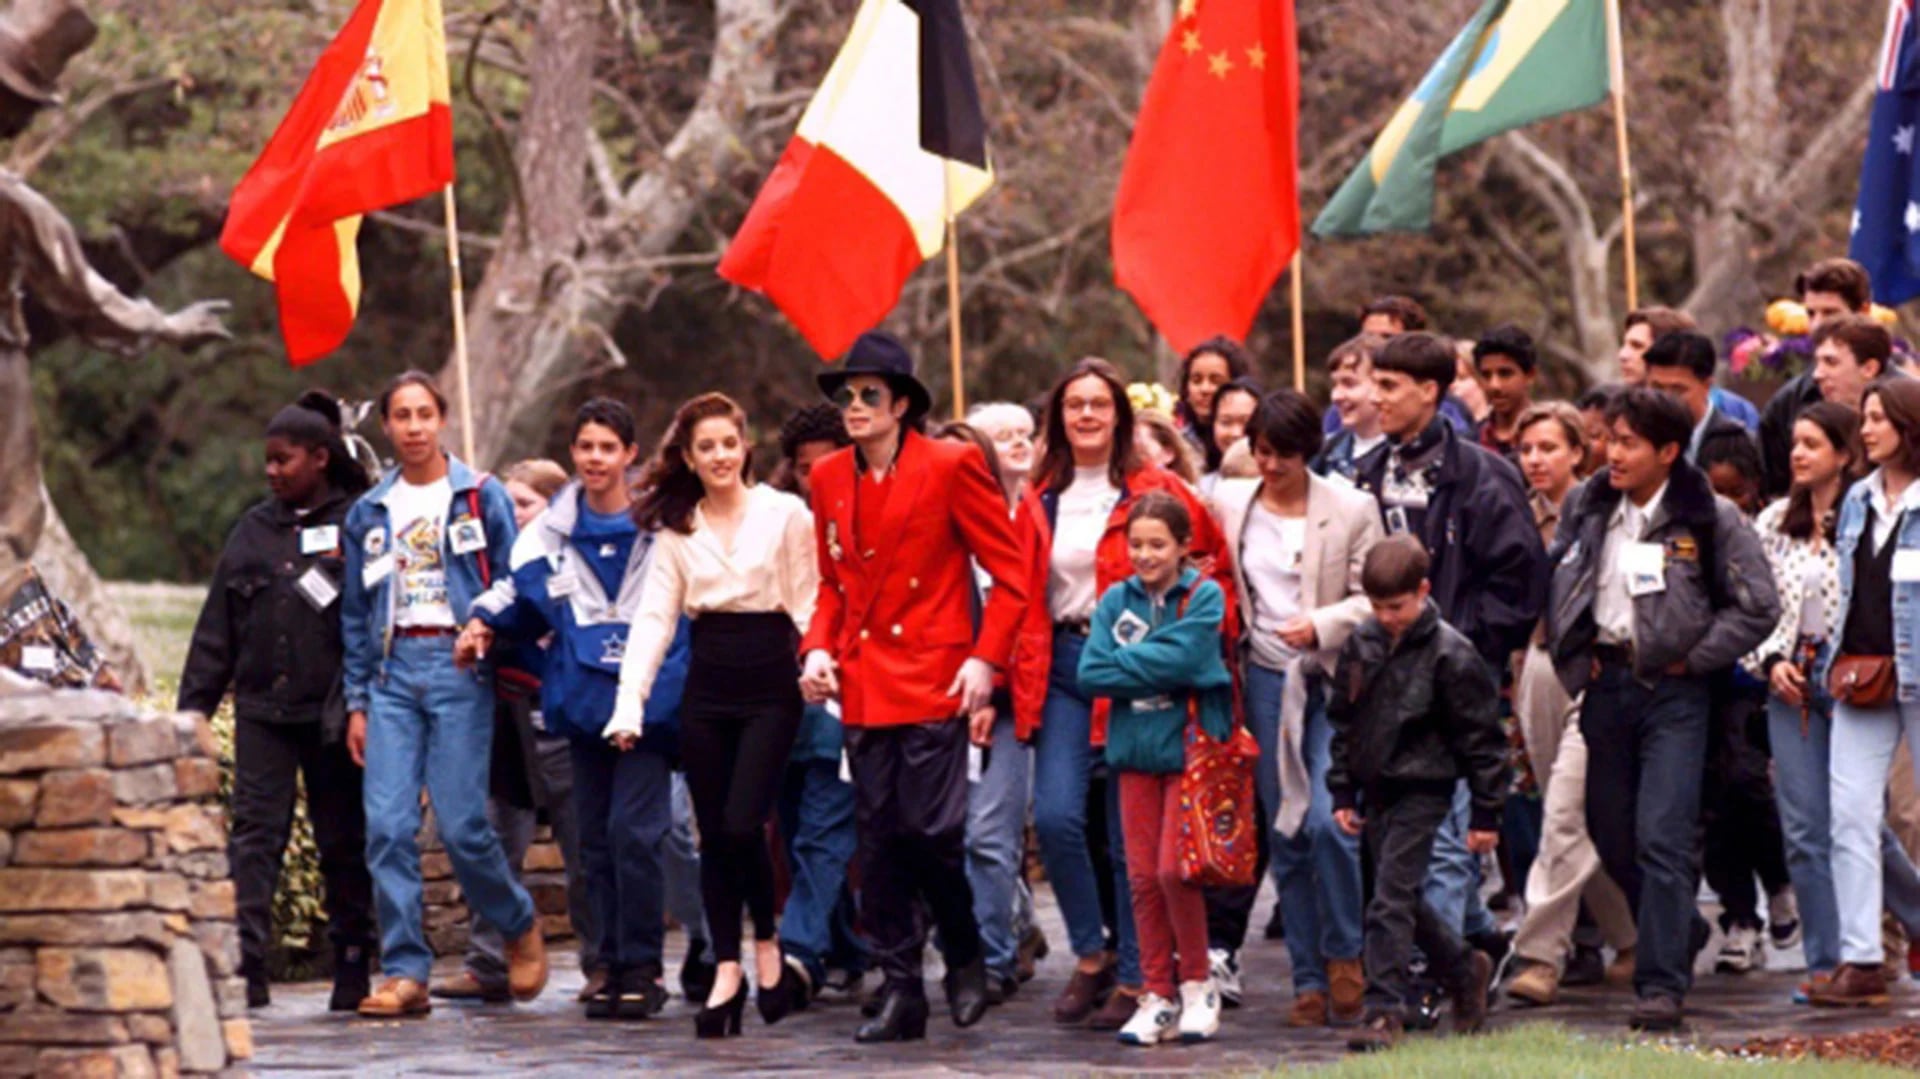 La proximidad de Michael Jackson con los niños fue siempre objeto de especulaciones y sospechas (AP)